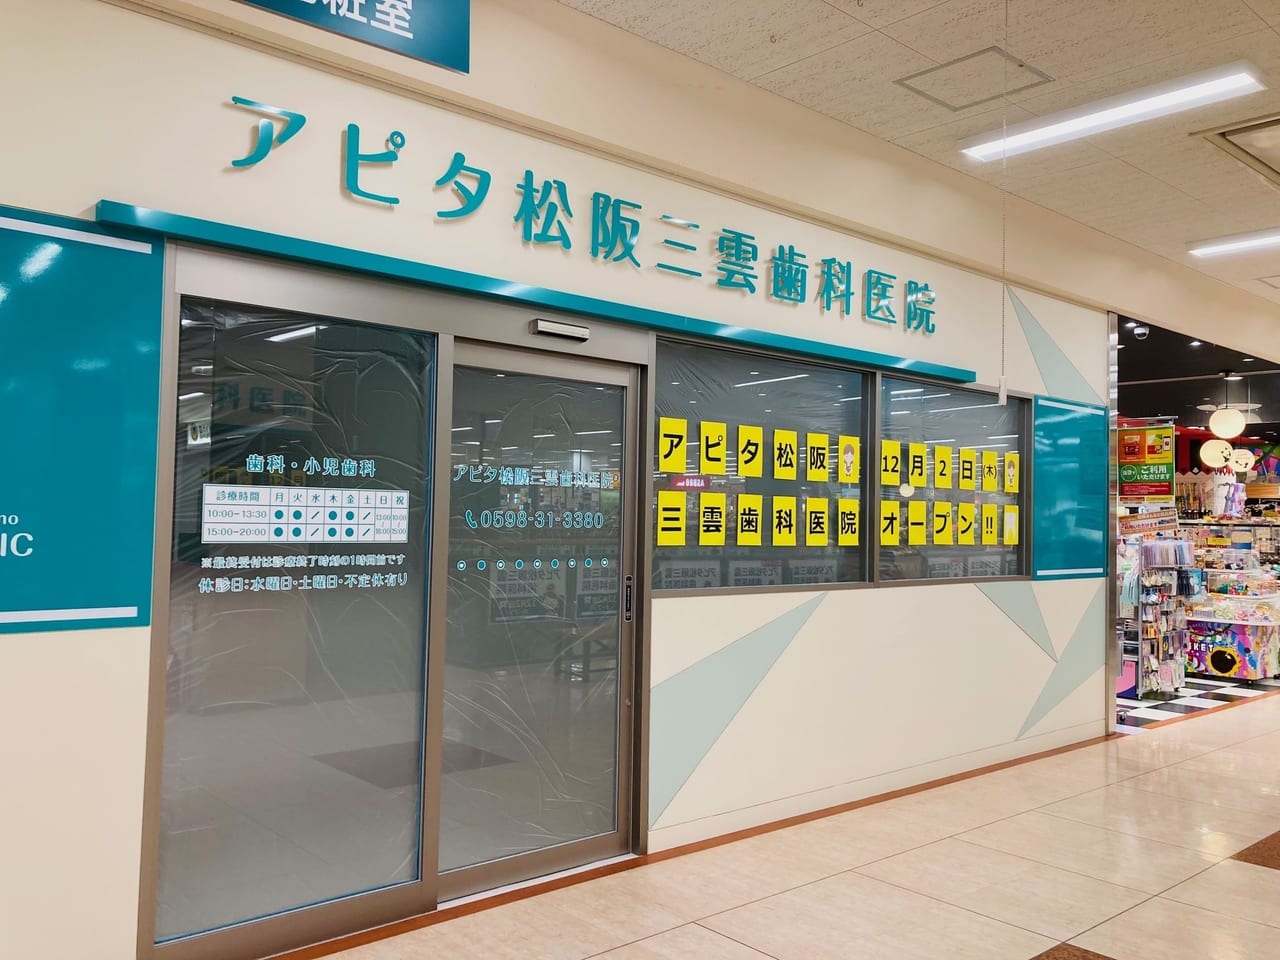 アピタ松阪三雲店2階にオープンするアピタ松阪三雲歯科医院の入口